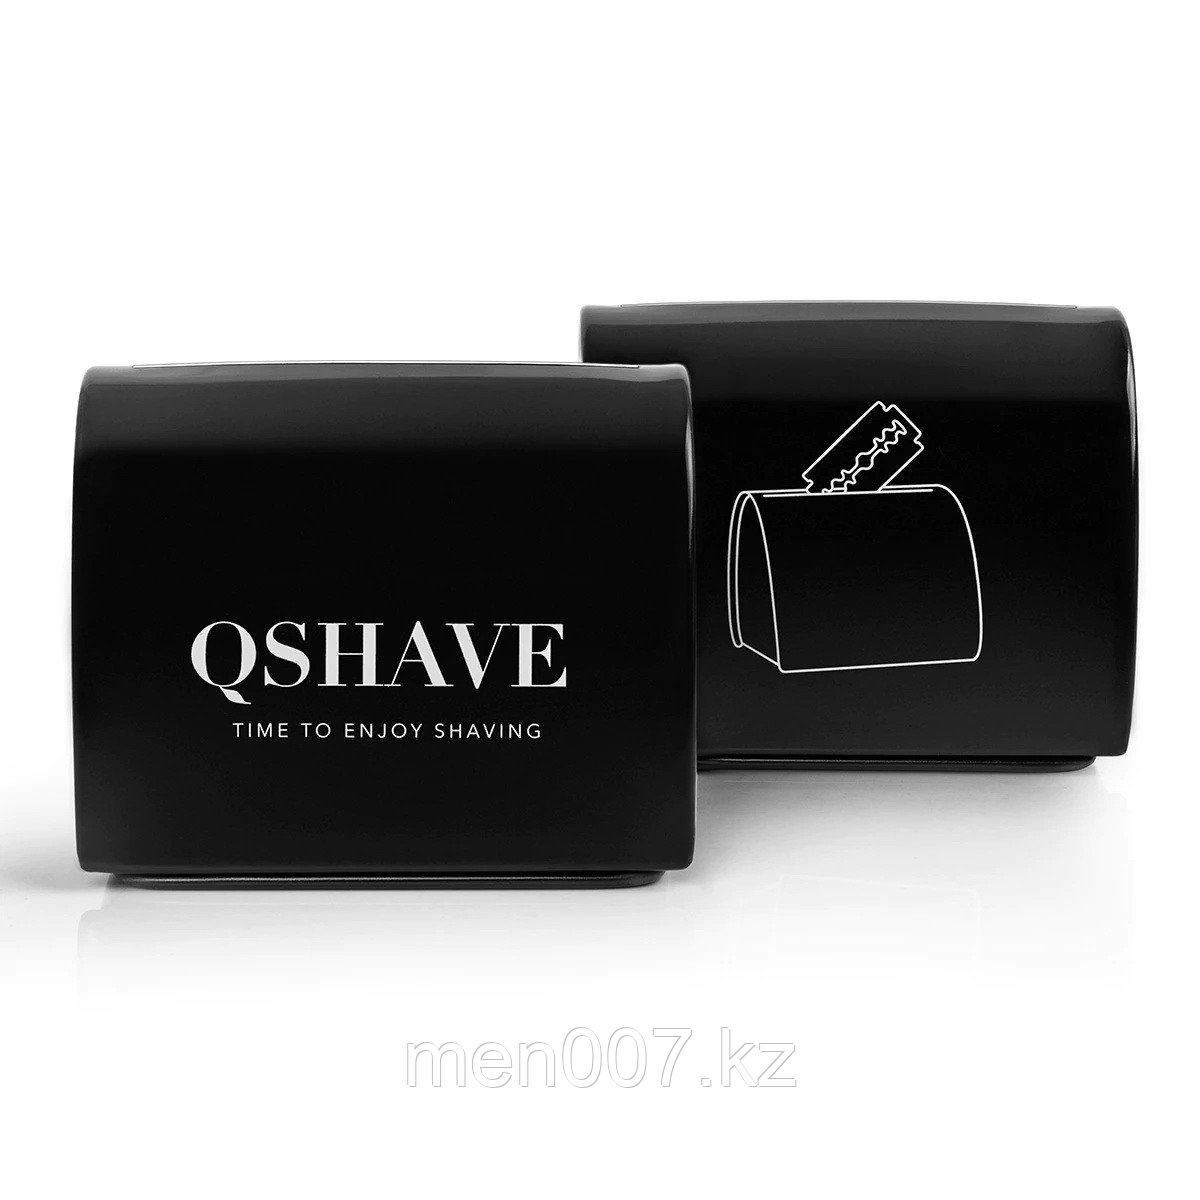 QSHAVE (Контейнер для использованных лезвий)